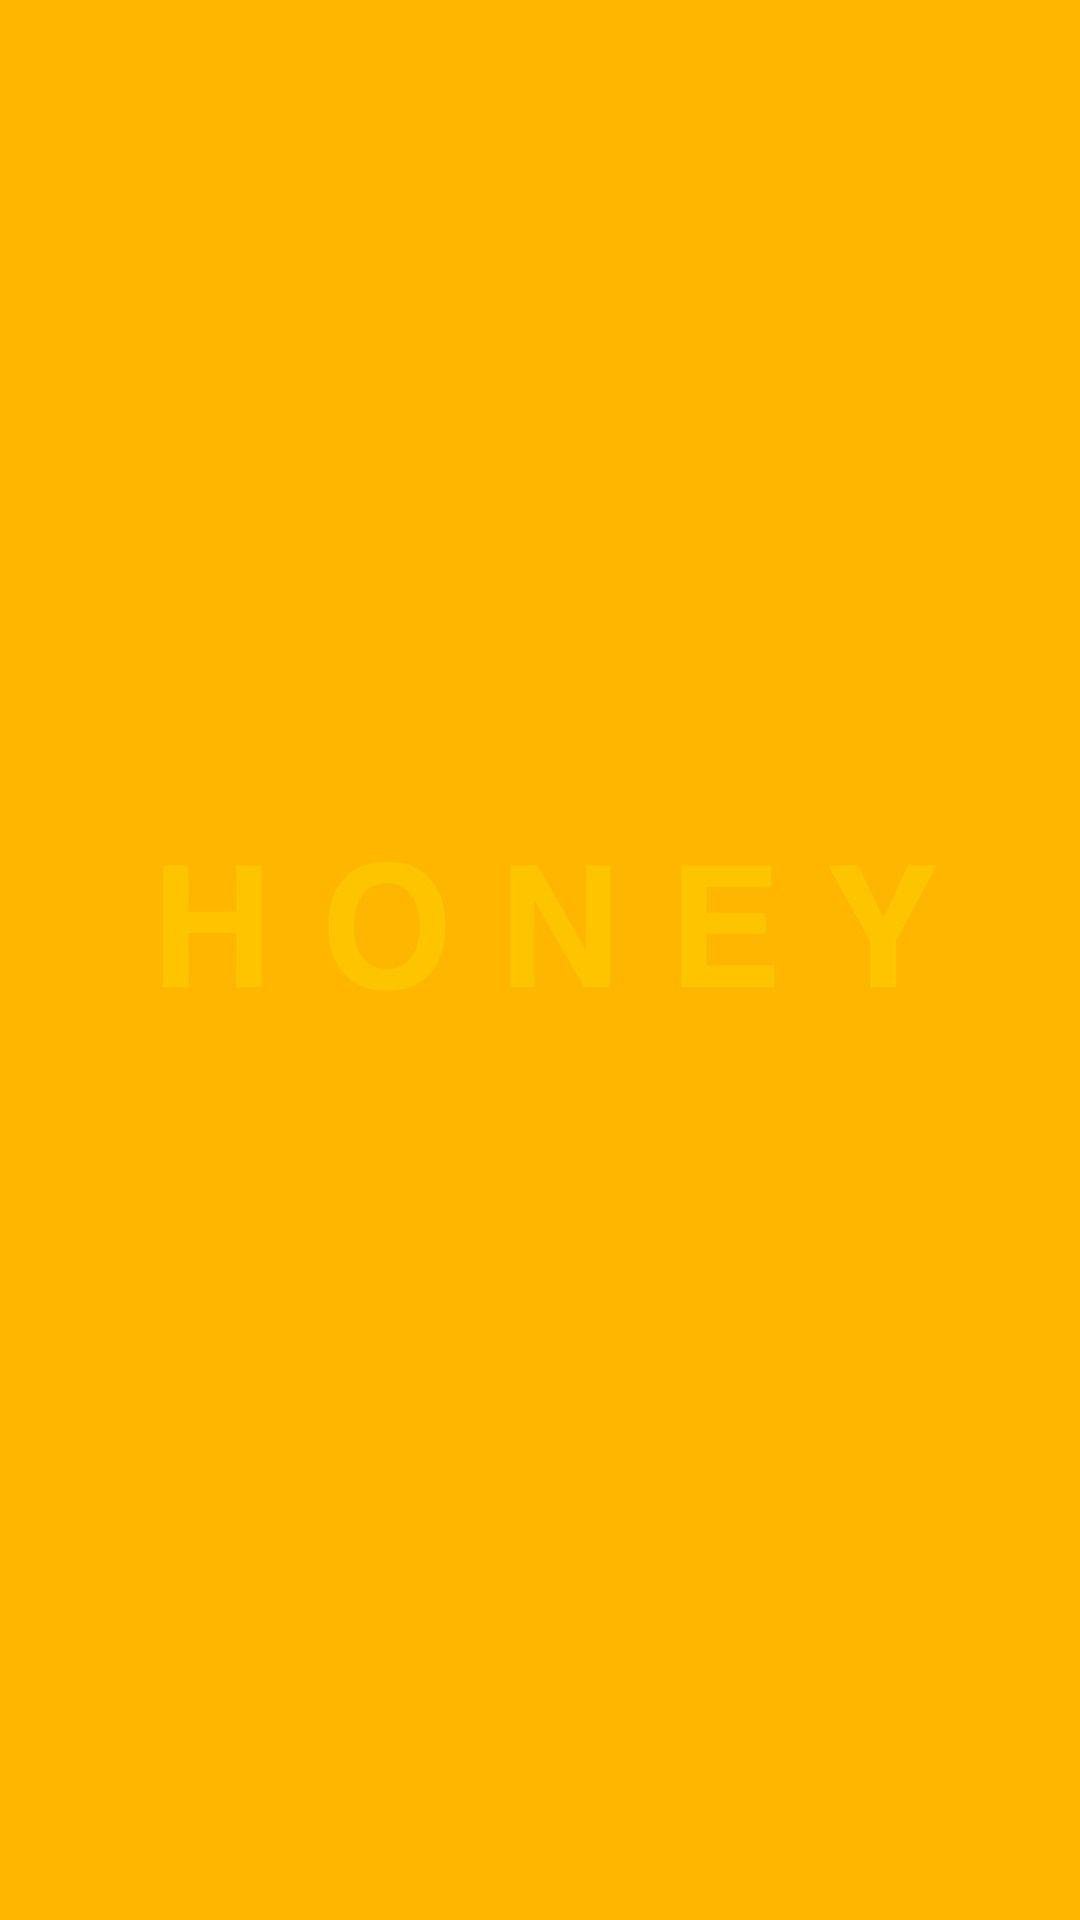 mustard yellow - honey